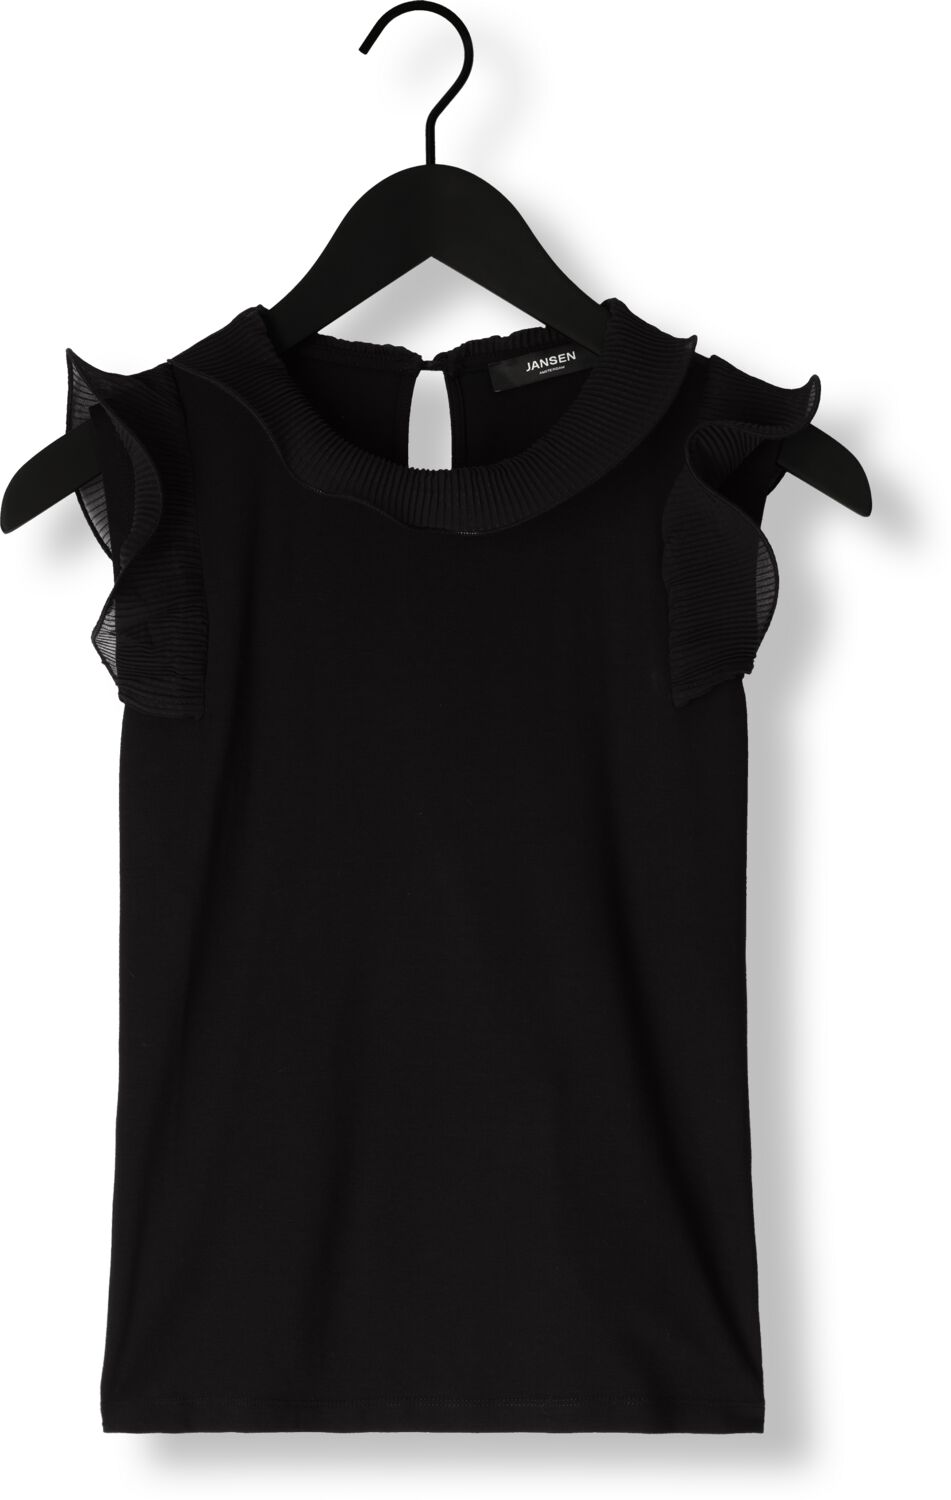 JANSEN AMSTERDAM Dames Tops & T-shirts V309 Top Sleeveless With Ruffle Details Zwart